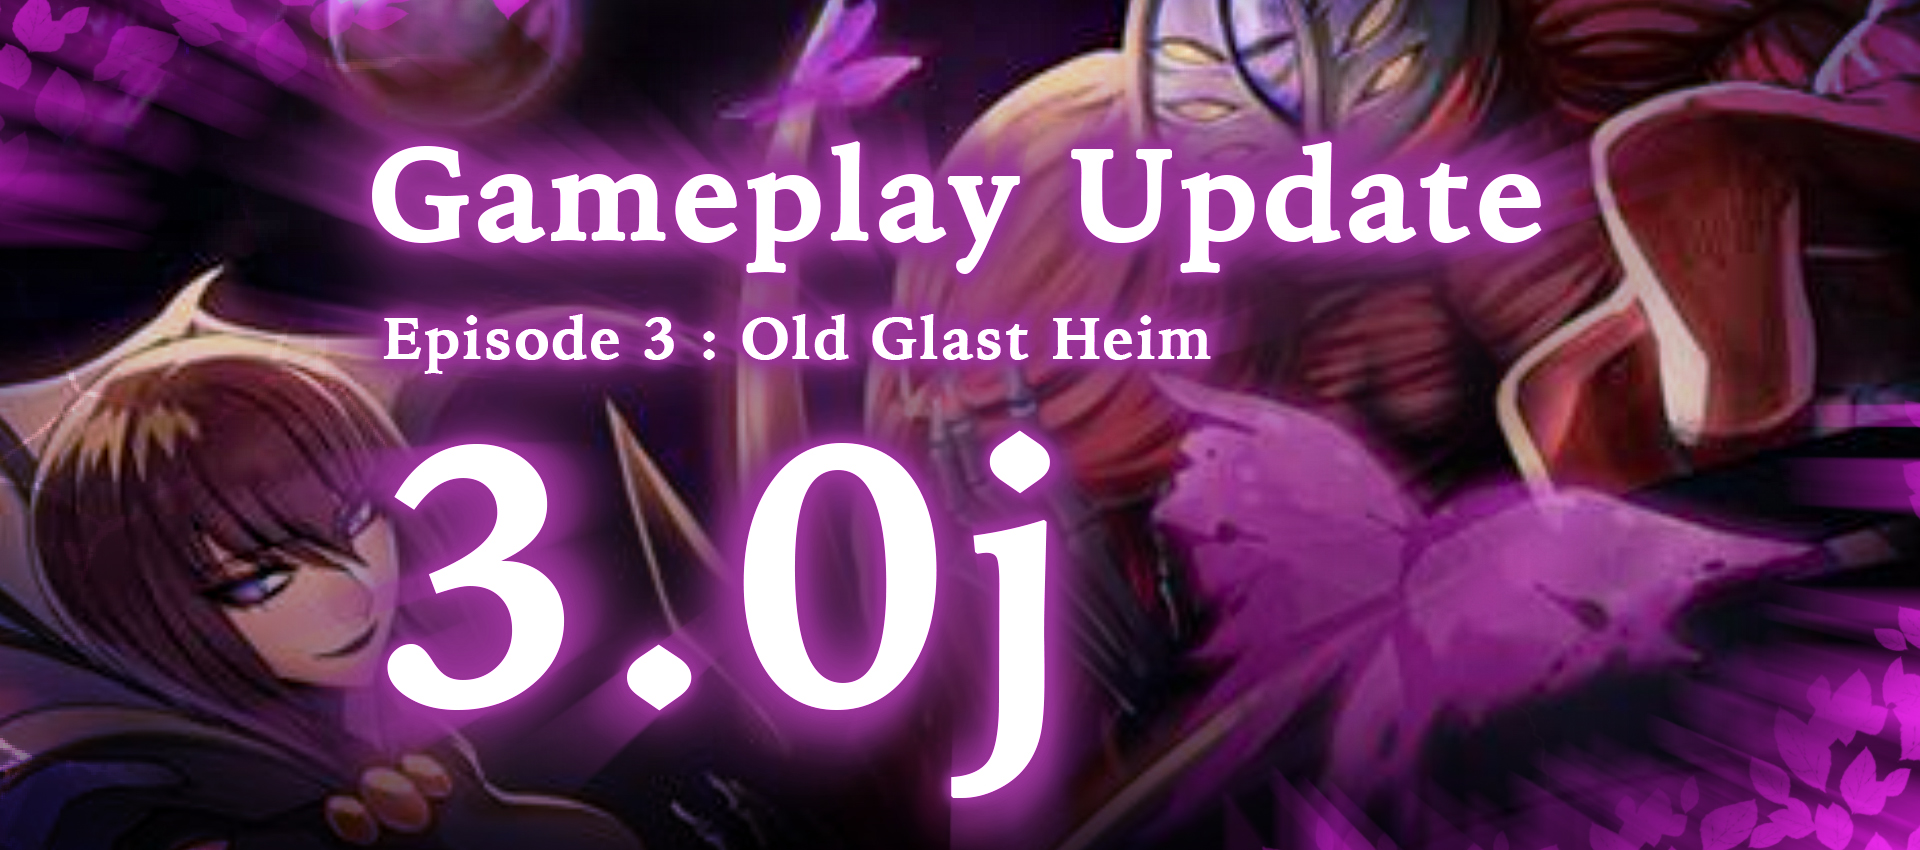 Gameplay Update 3.0j : Old Glast Heim